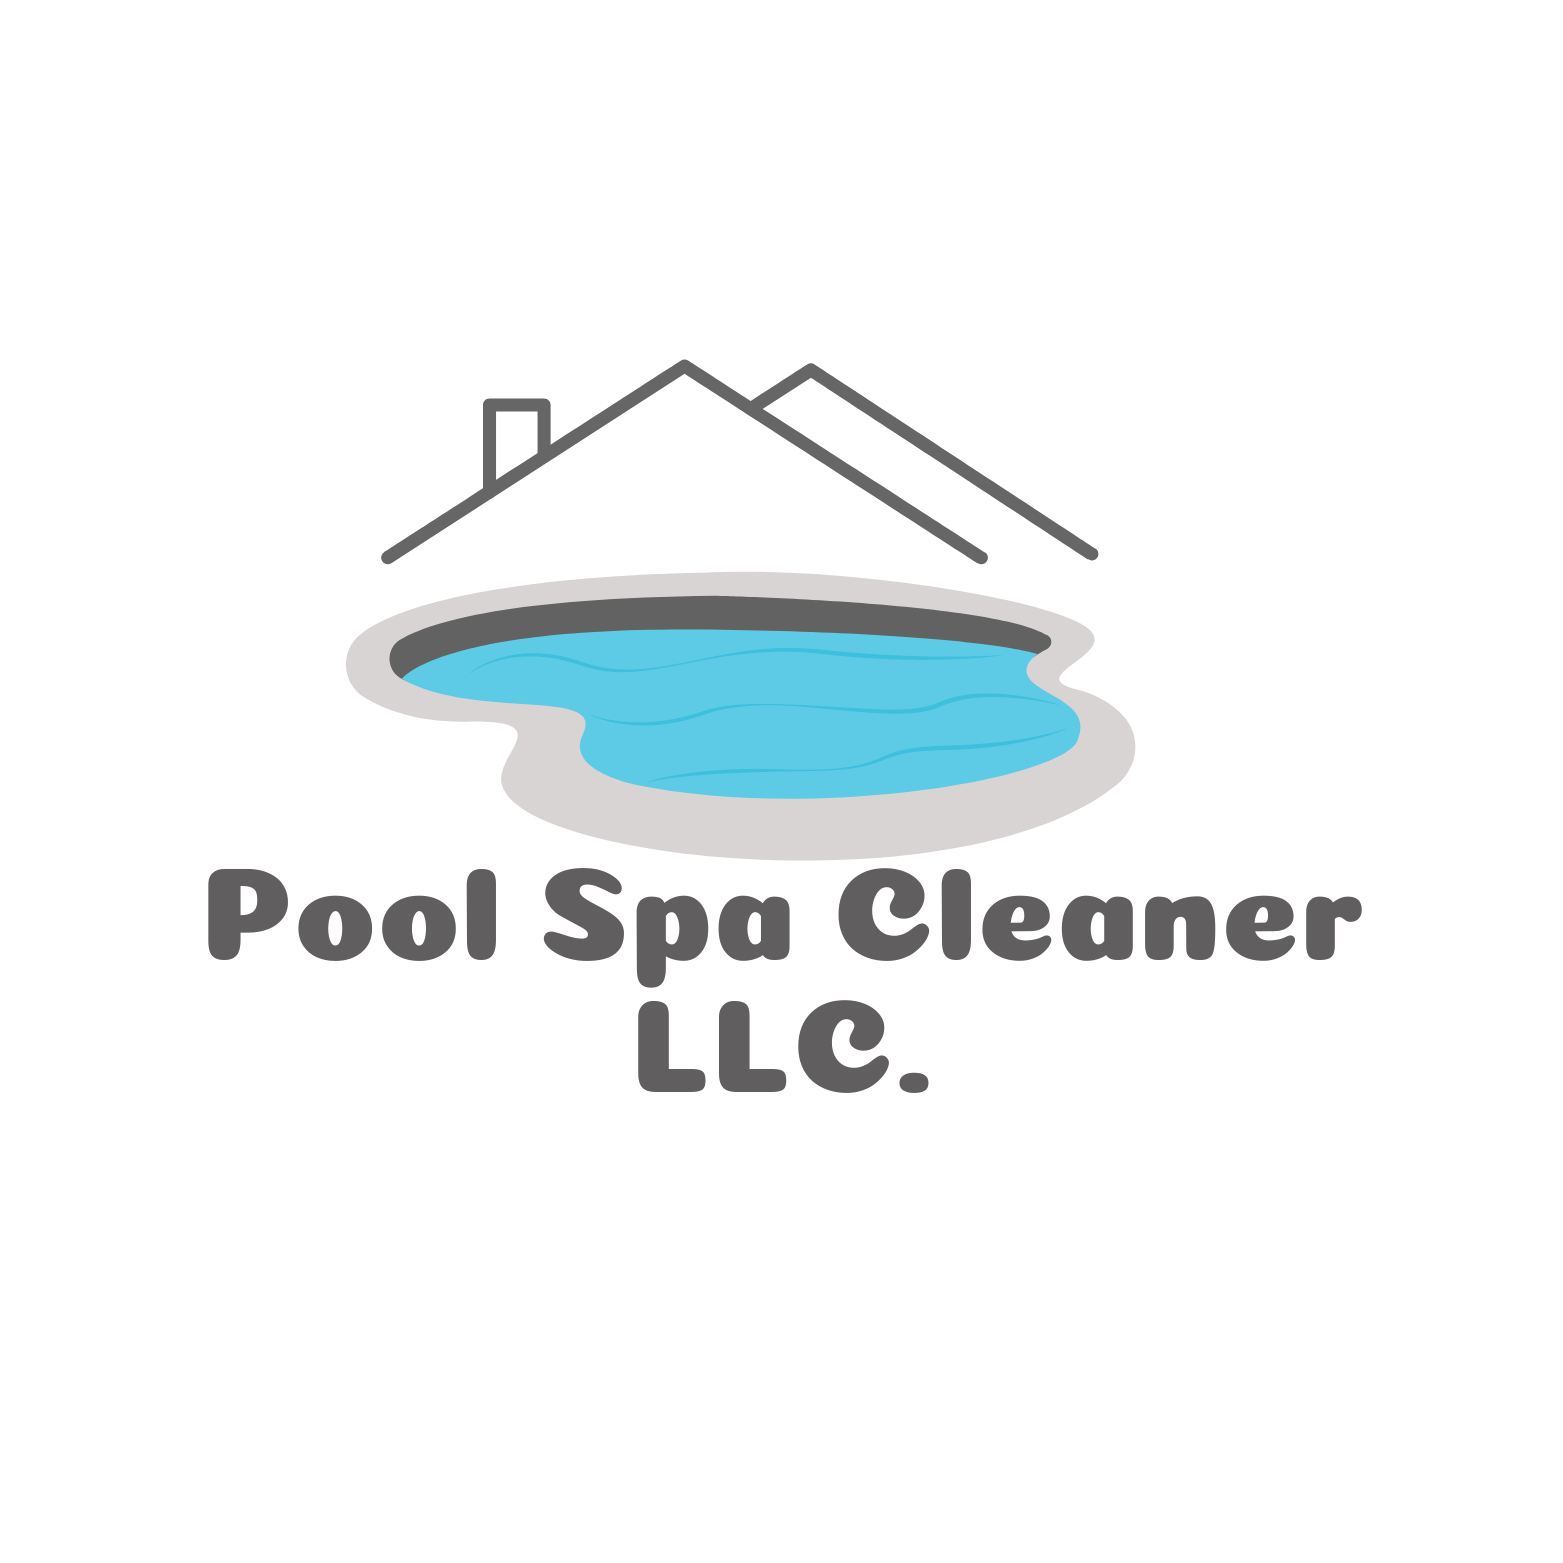 Pool Spa Cleaner, LLC Logo